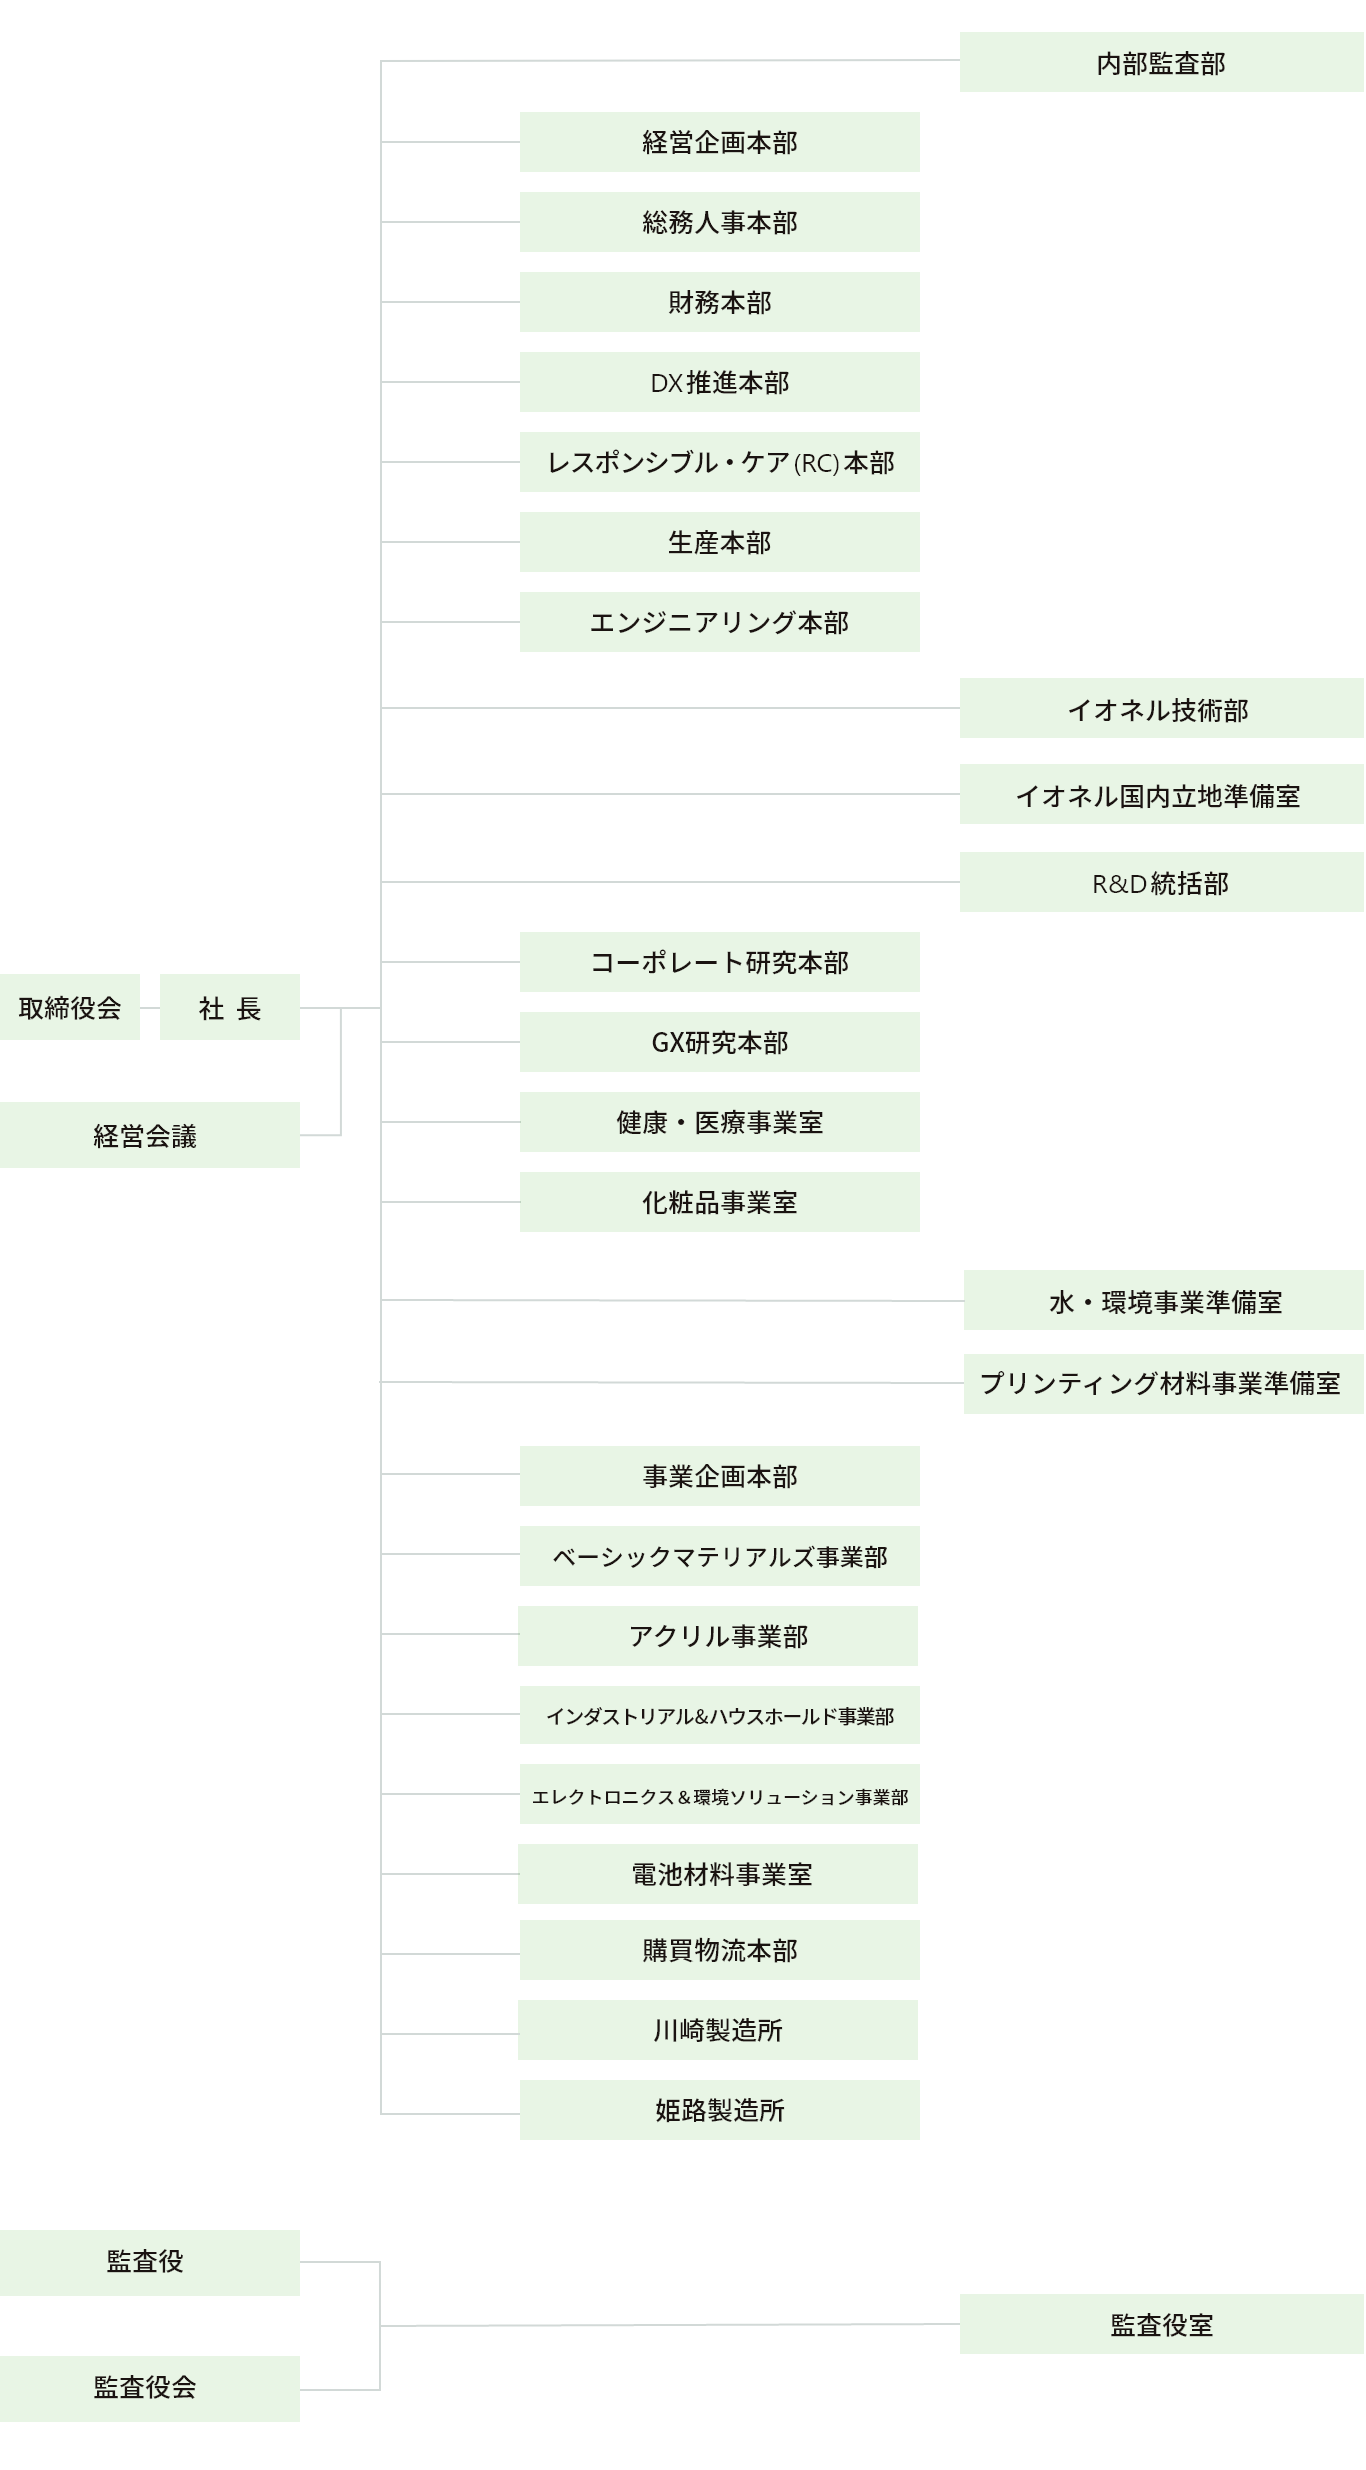 日本触媒の組織図イメージ図